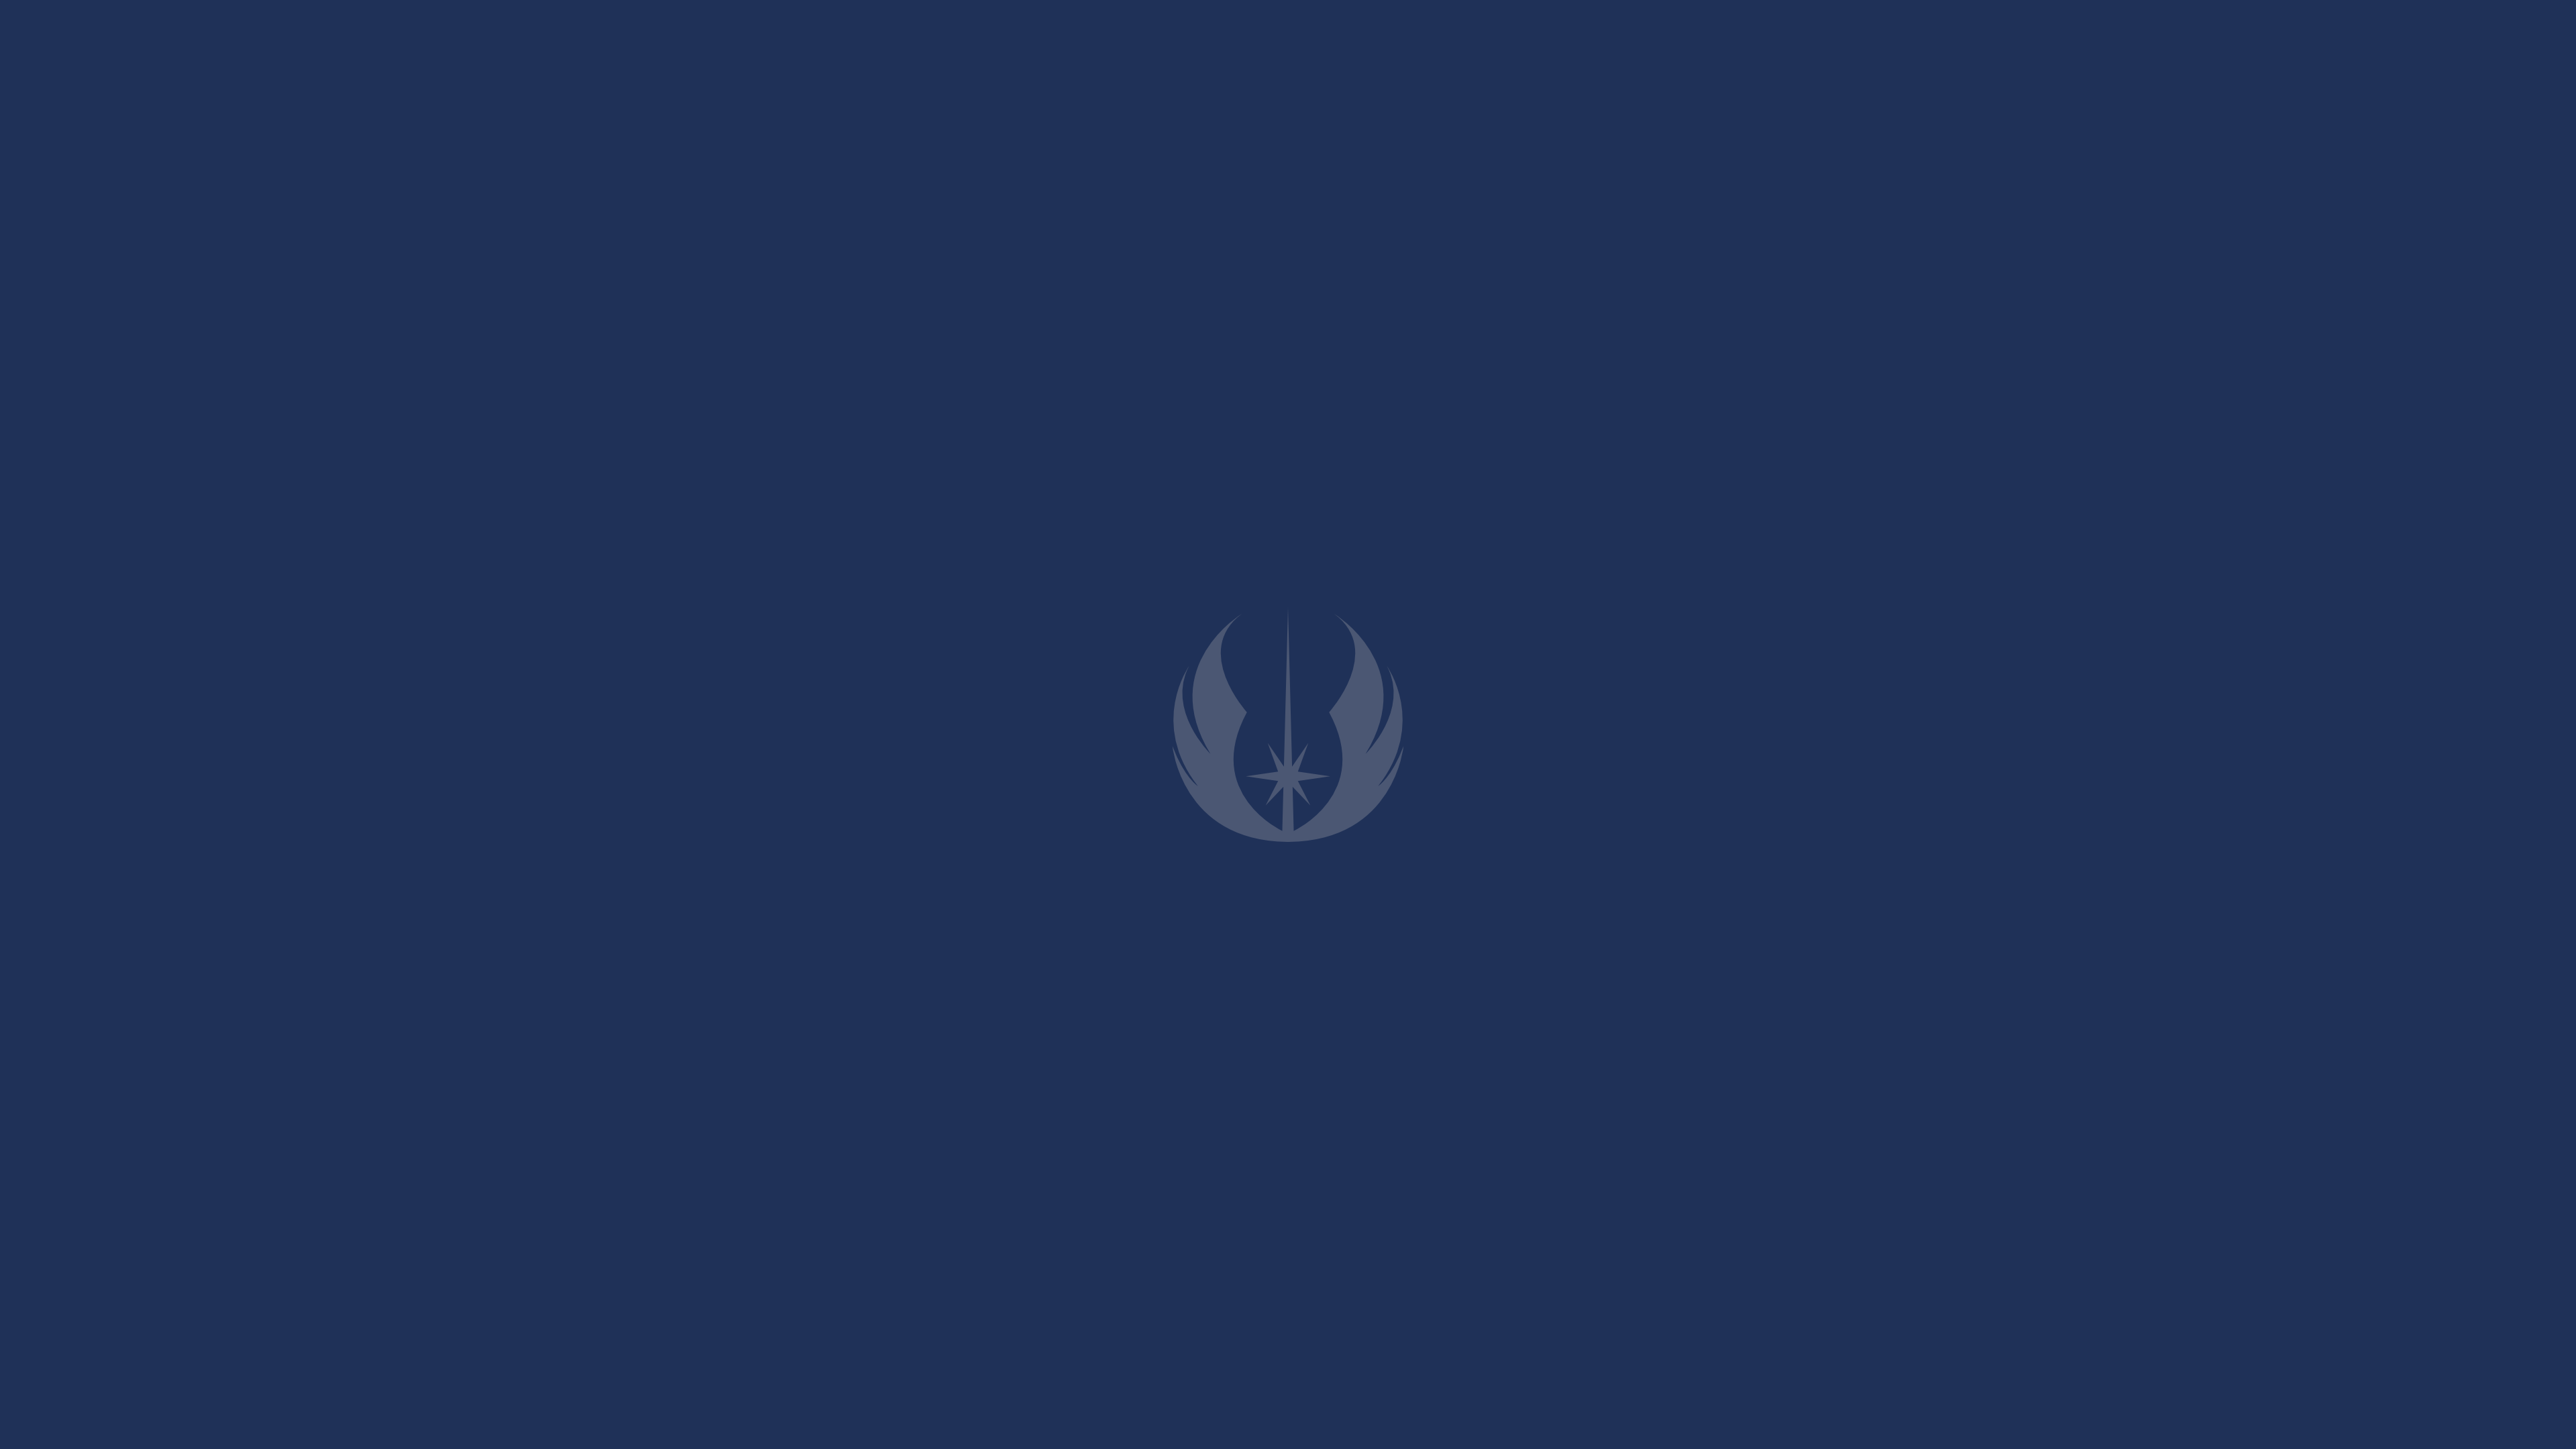 General 3840x2160 Star Wars Jedi minimalism